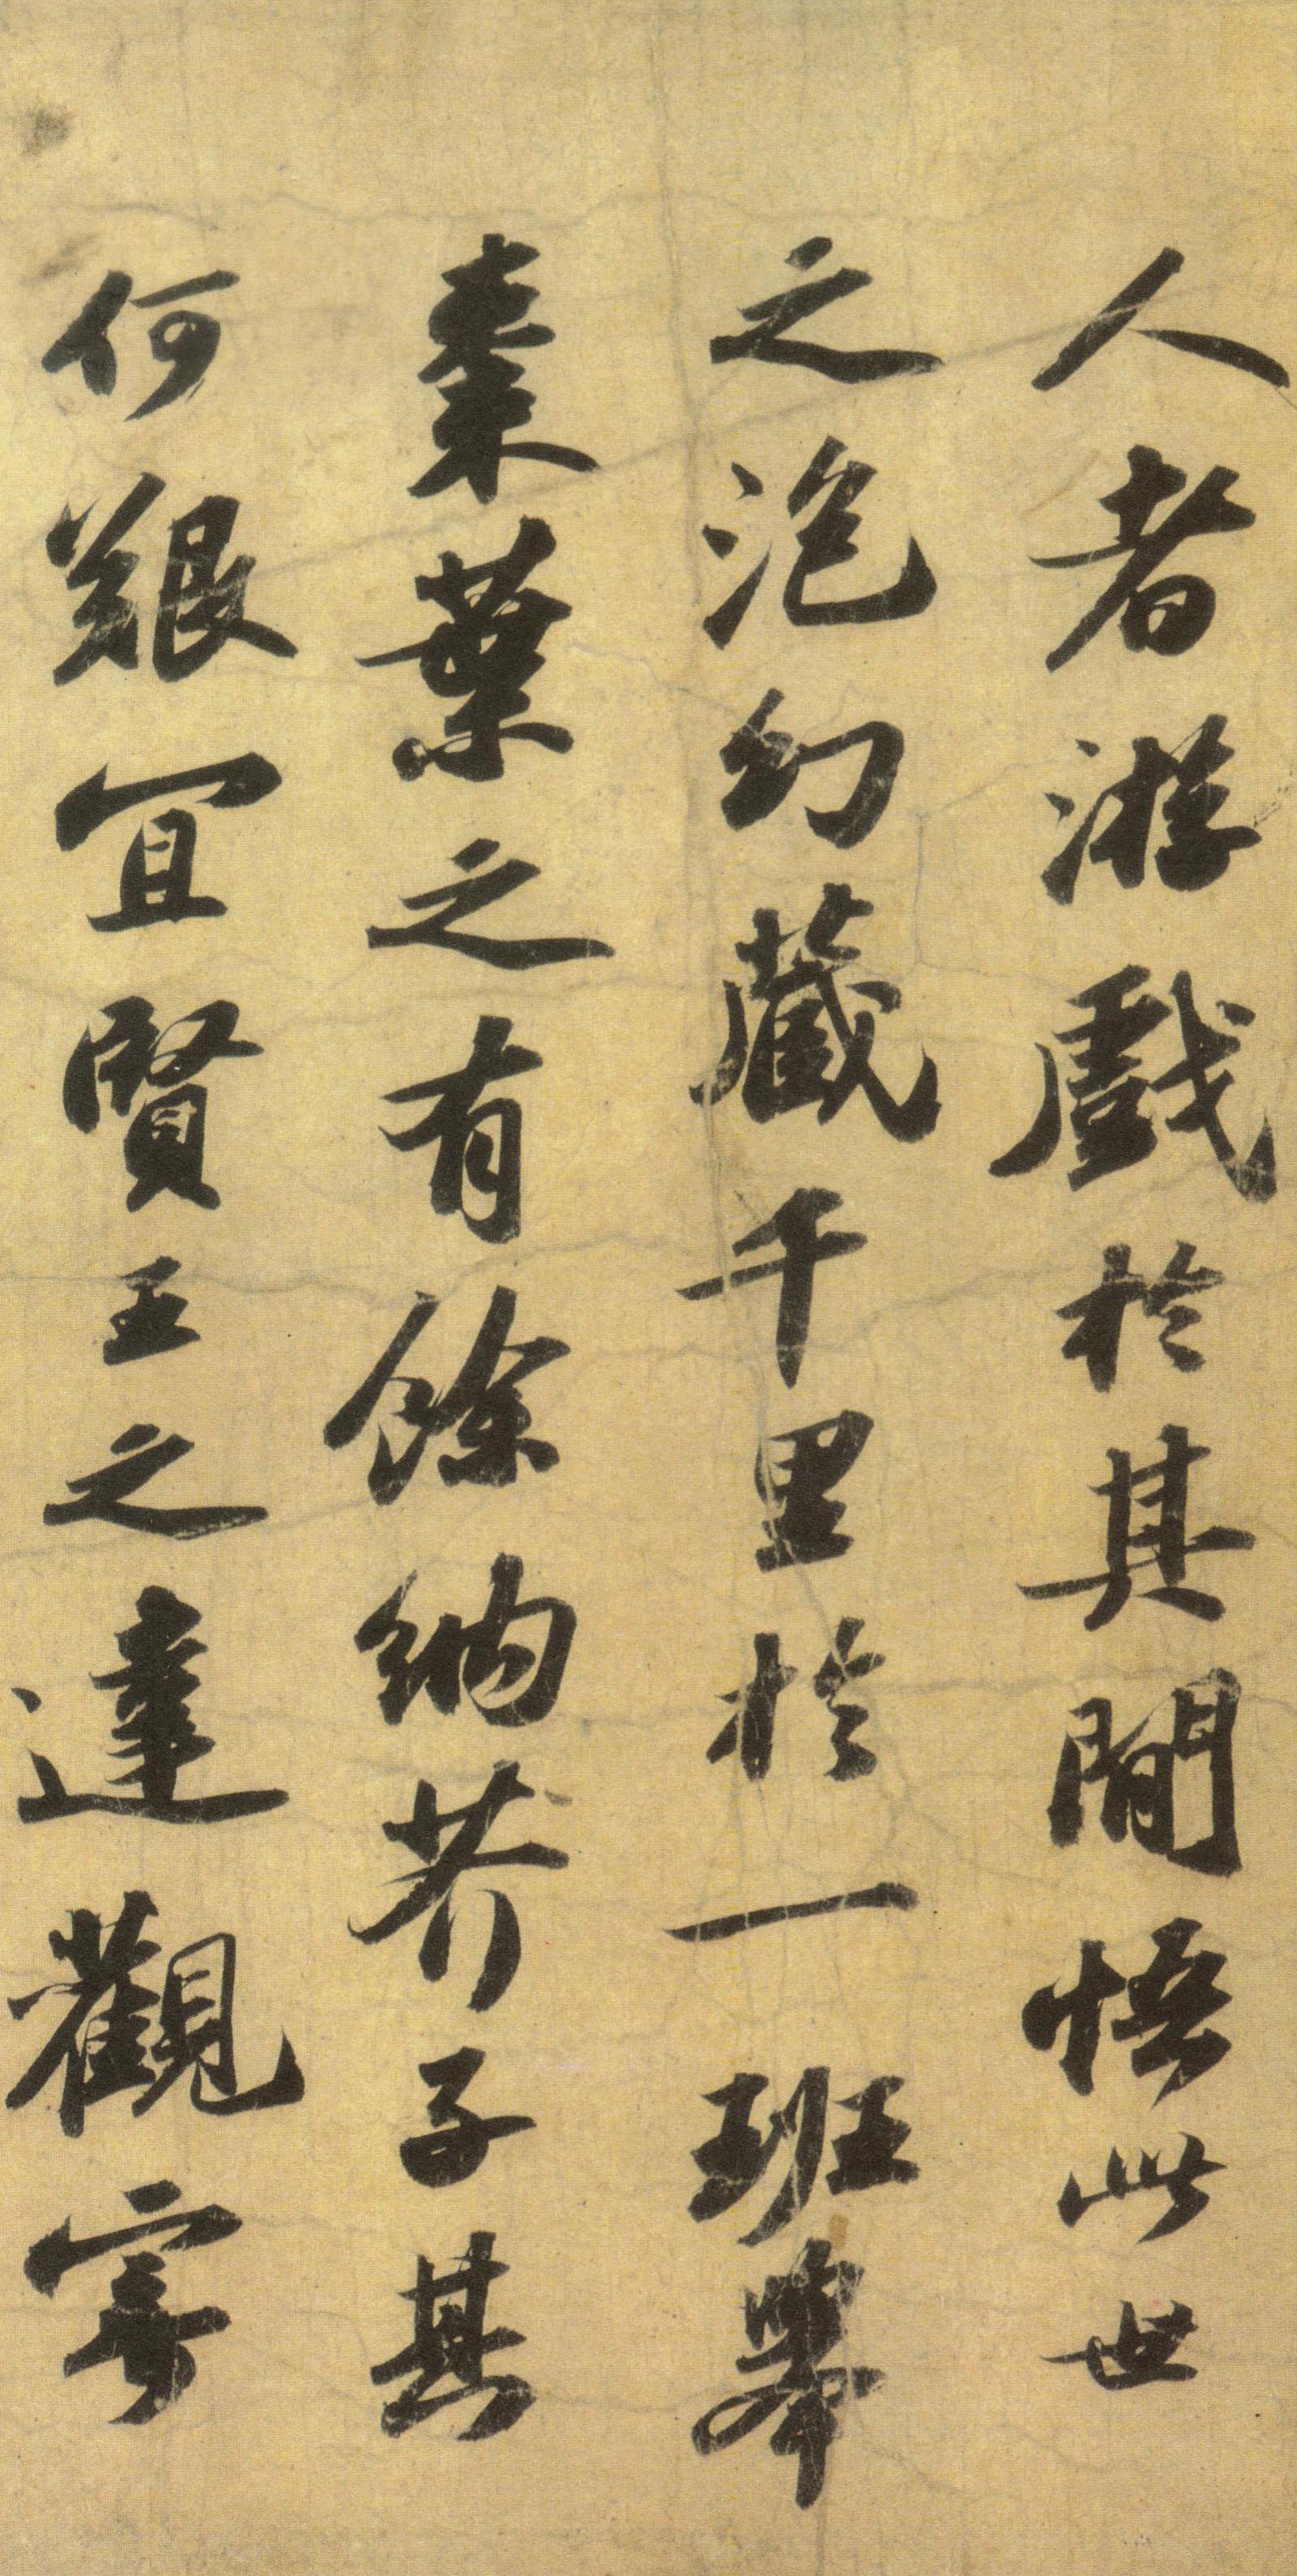 苏轼《洞庭春色赋》与《中山松醪赋》合卷-吉林省博物馆藏（分段欣赏）(图2)